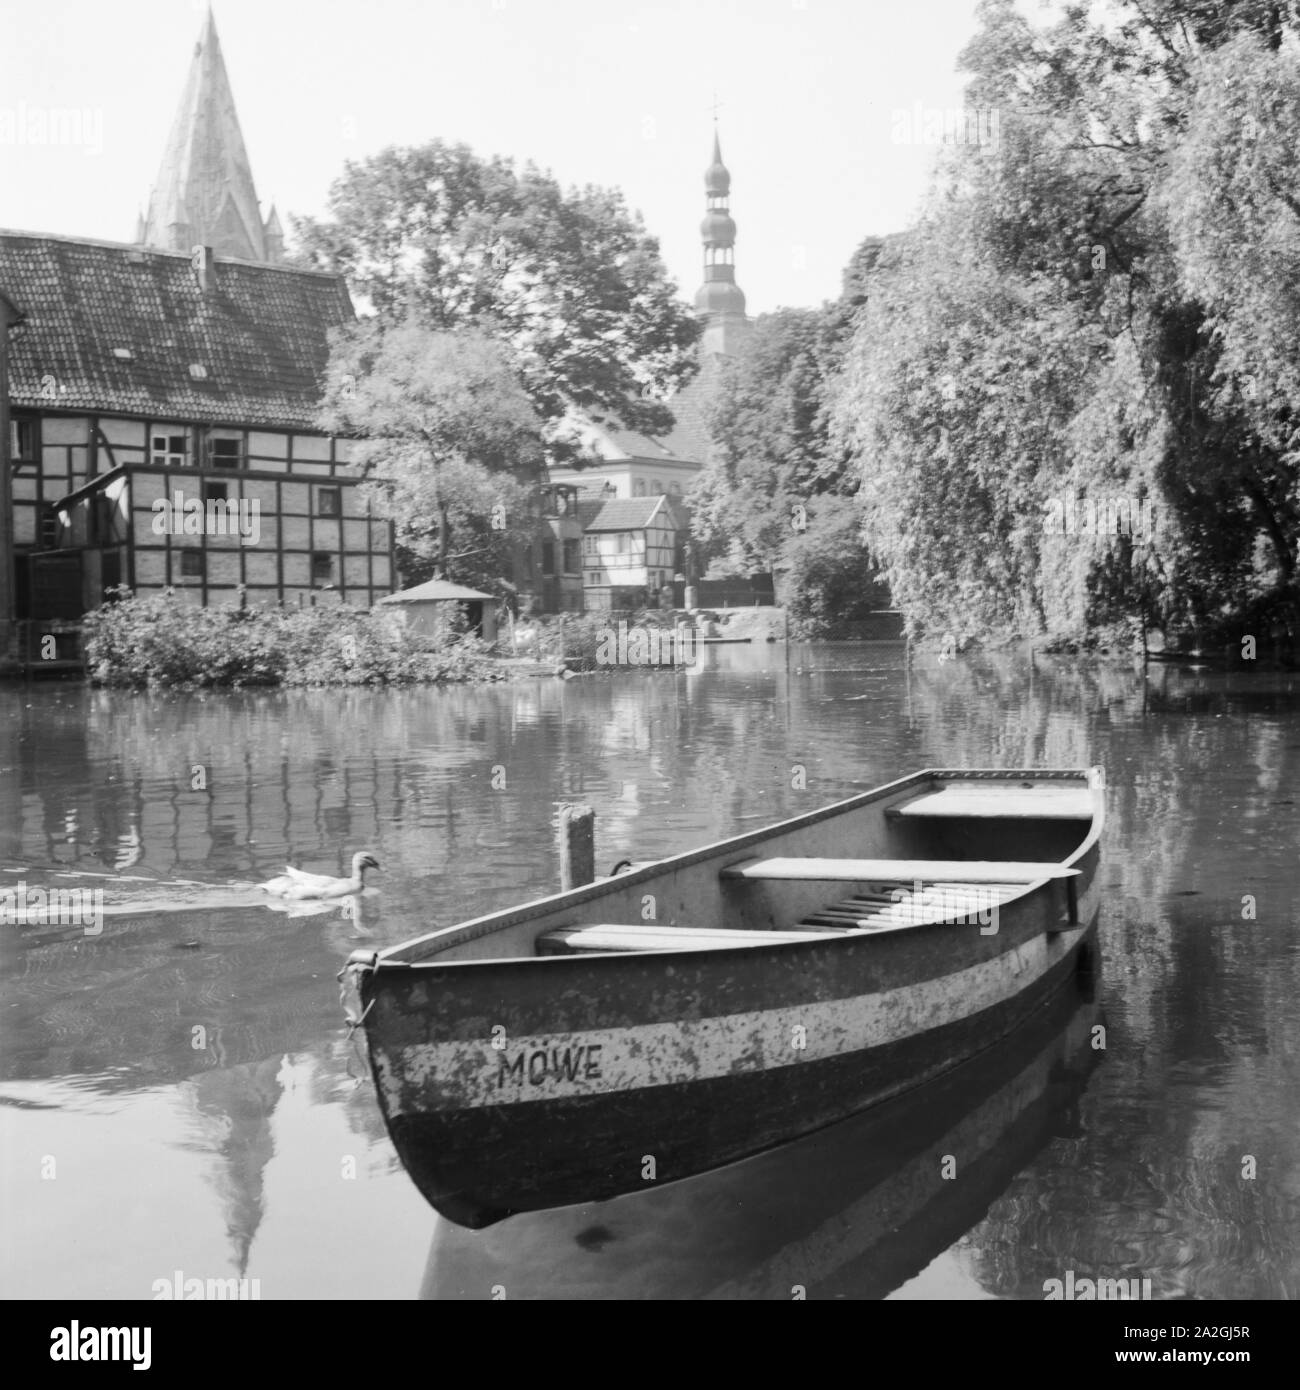 Das Ruderboot 'Möwe' Balatonfüred mit dem Wasser in Soest mit Blick auf den St. Patrokli Dom und die St. Petri Kirche, Deutschland 1930er Jahre. Ein Ruderboot liegt auf dem Wasser bei Soest in Westfalen, Deutschland 1930. Stockfoto